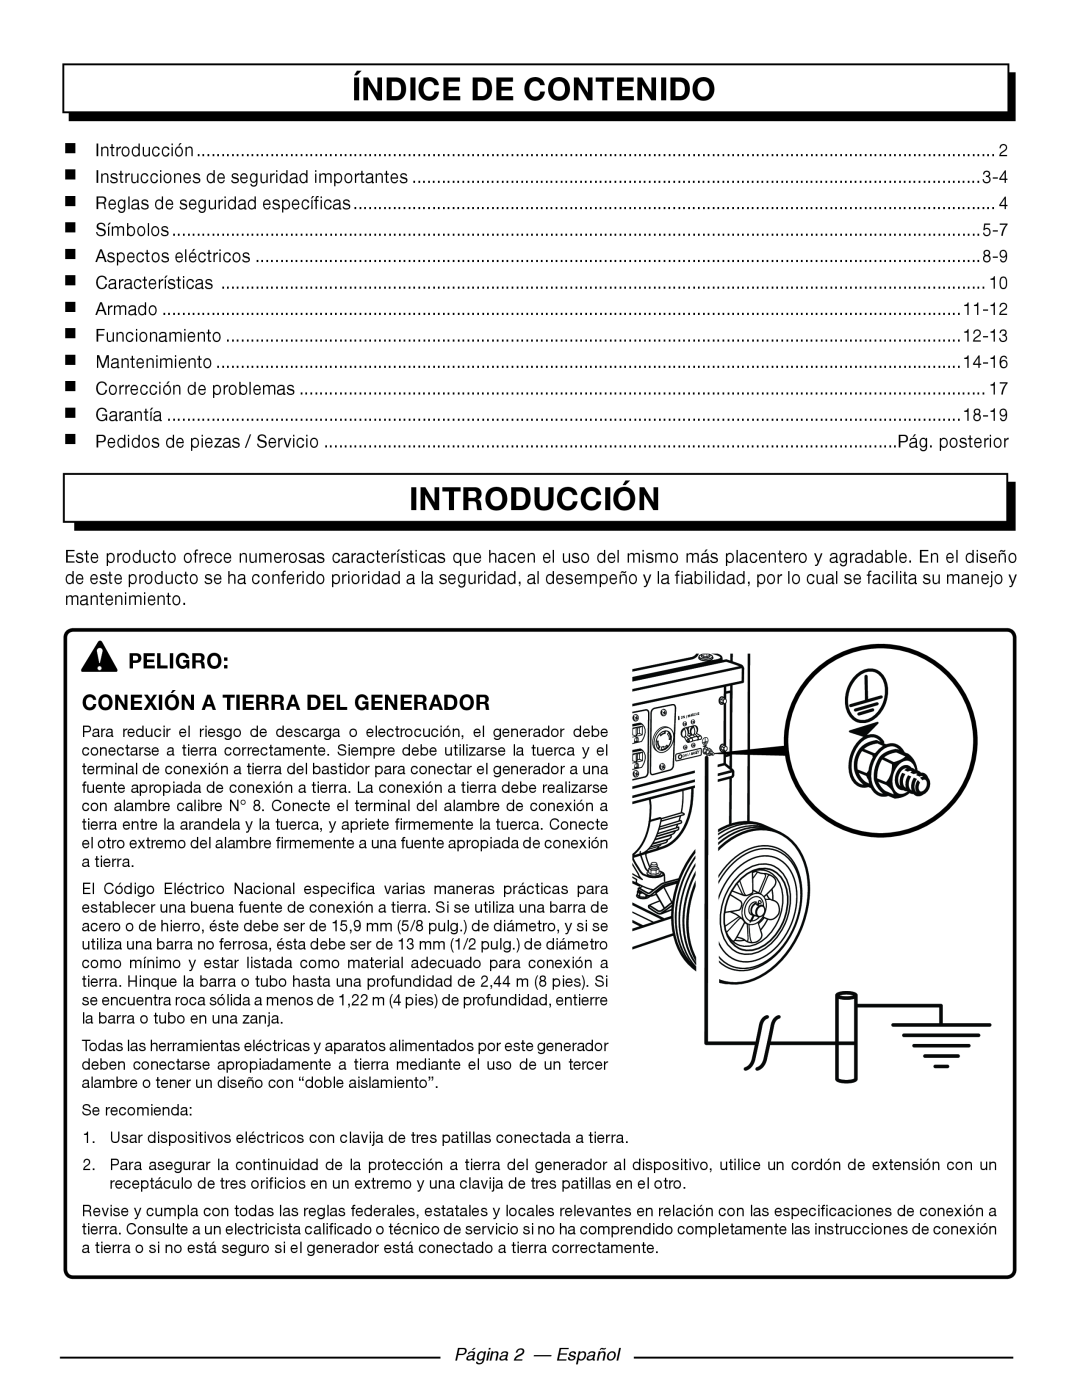 Homelite HGCA5000 Índice De Contenido, Introducción, Peligro Conexión A Tierra Del Generador, Pág. posterior, 11-12, 12-13 